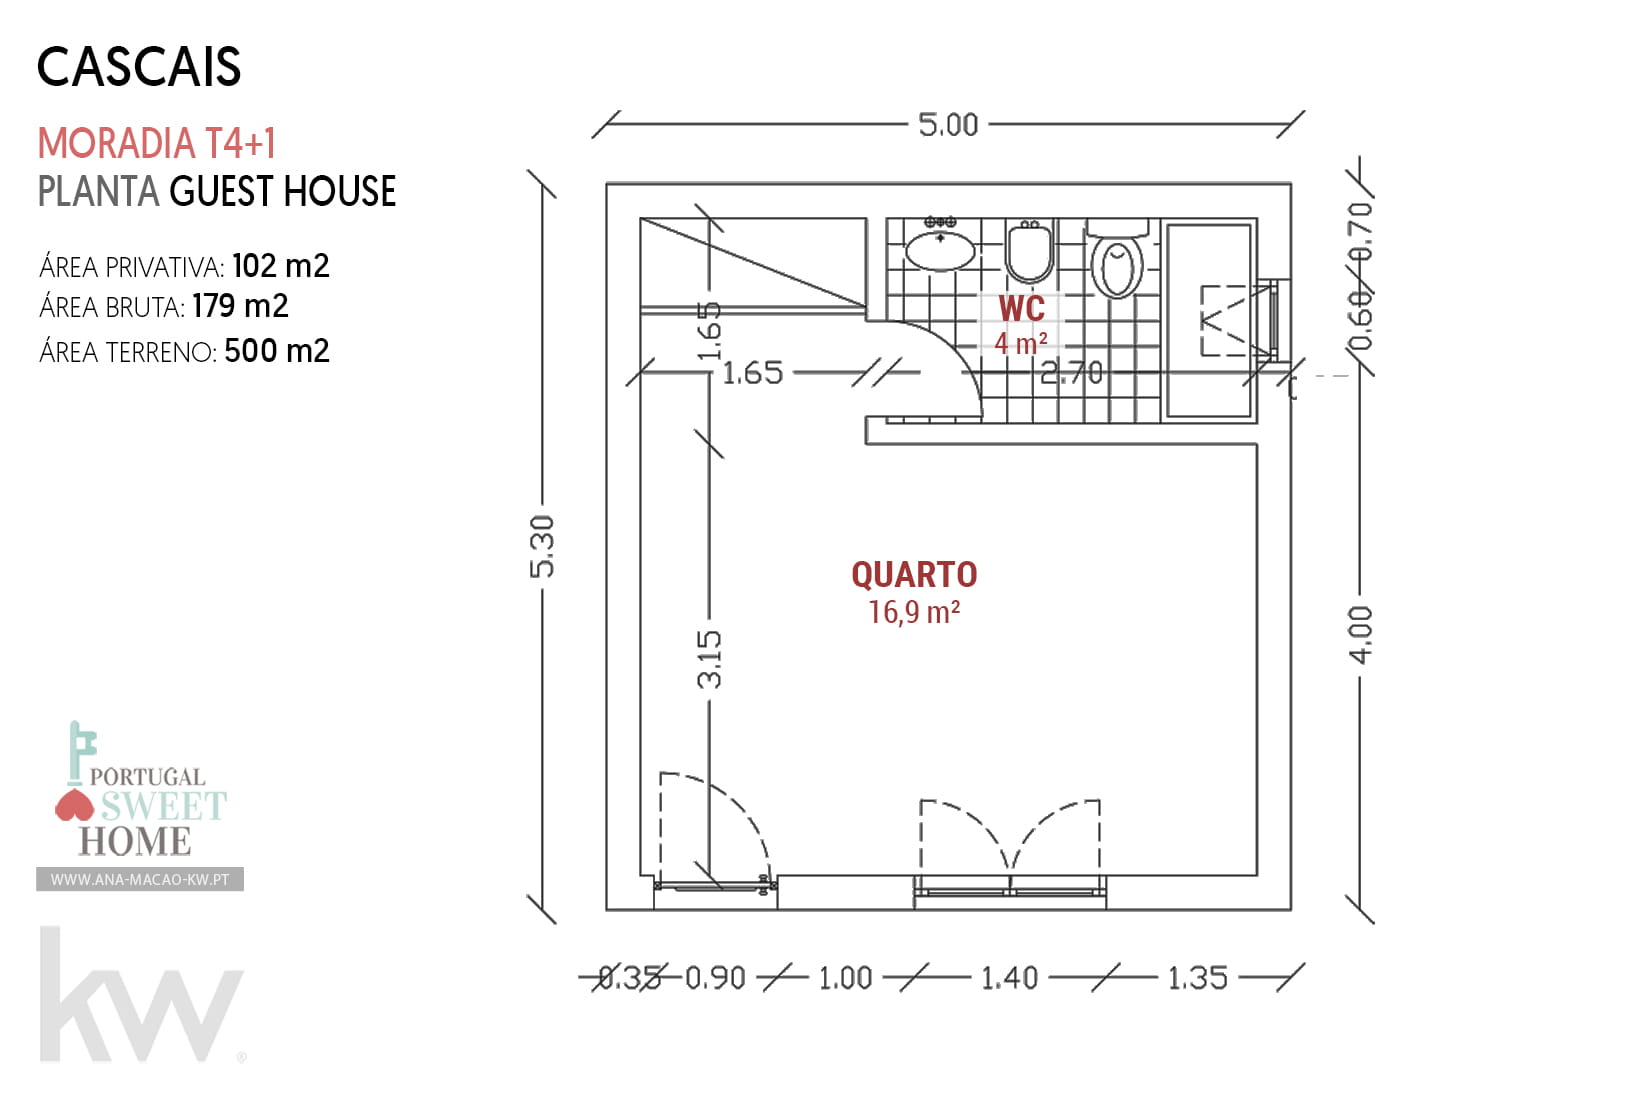 Guest House floor plan